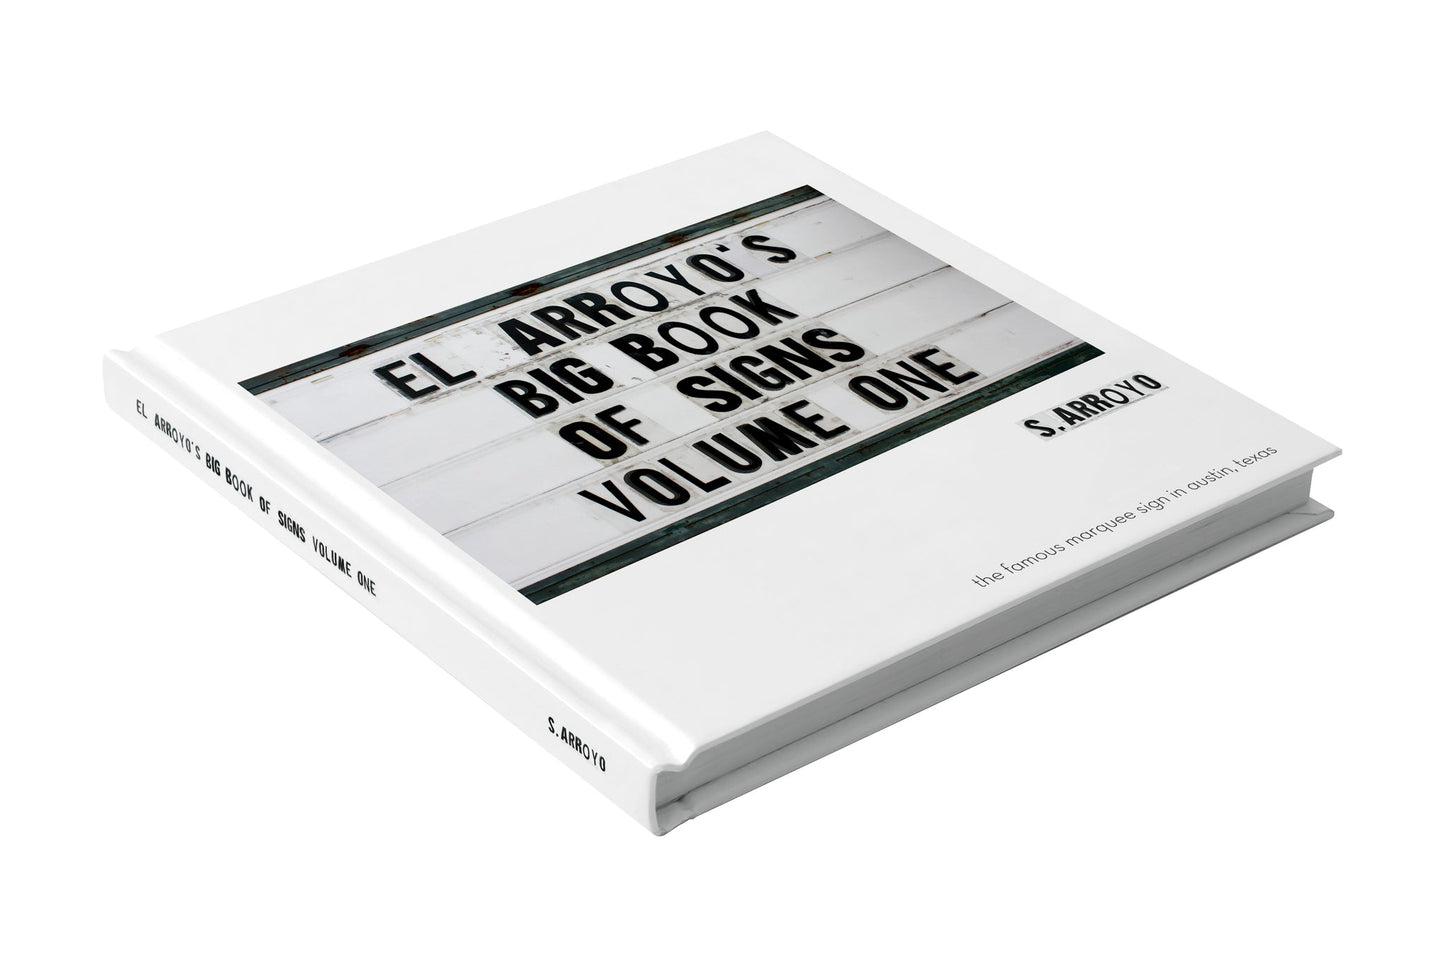 El Arroyo's Big Book of Signs: Volume One